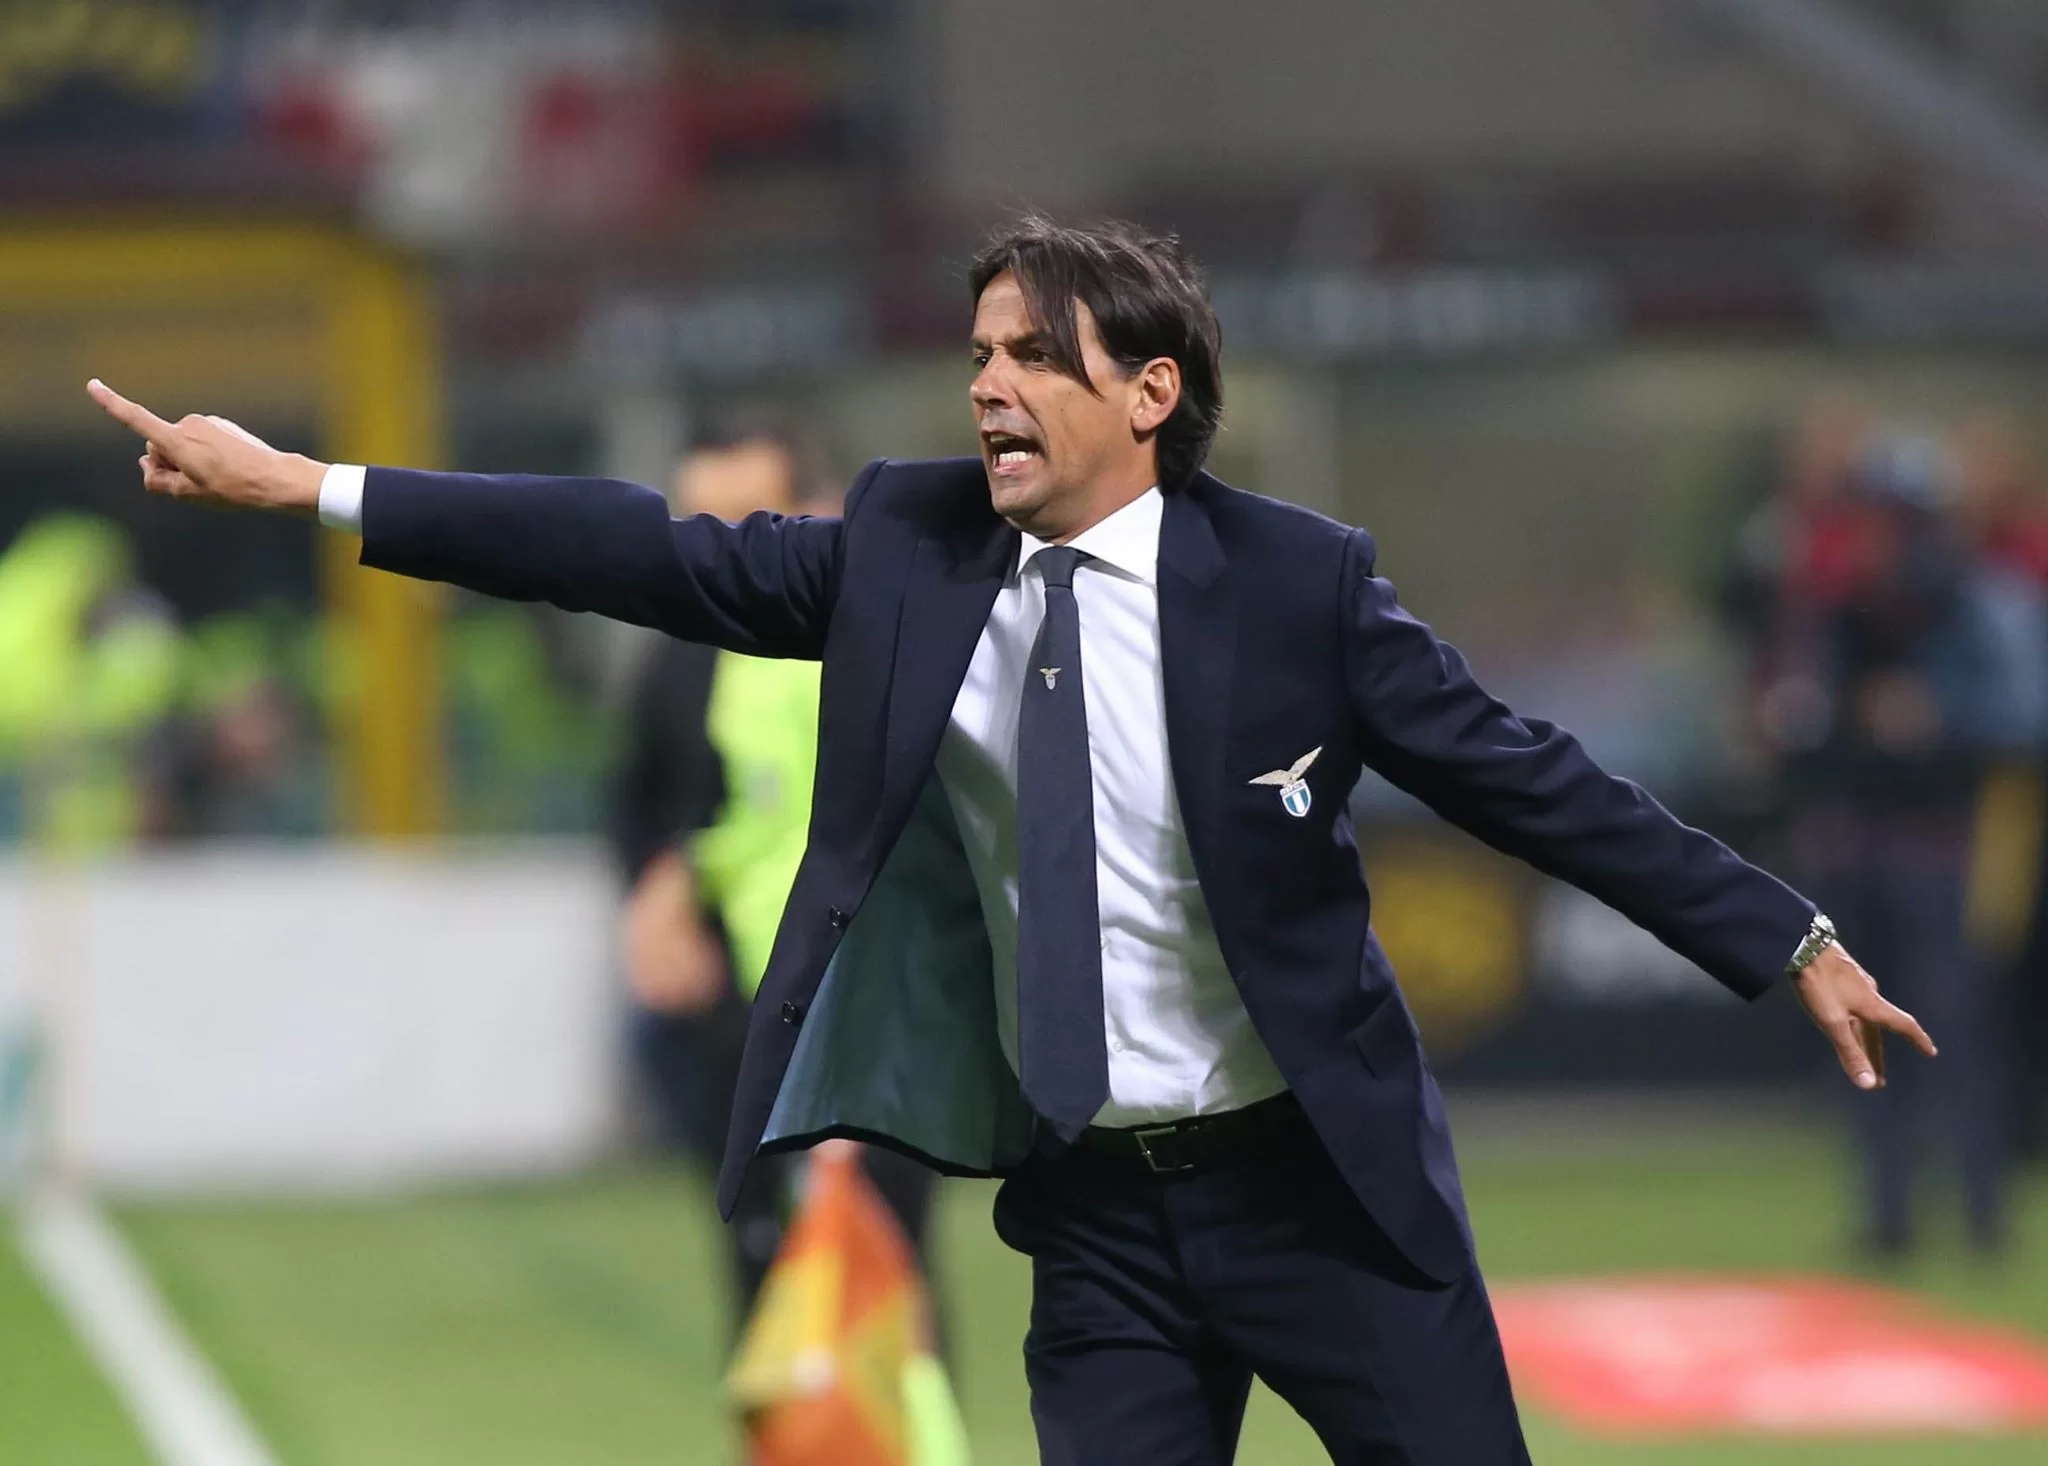 Qui Lazio, ieri duro confronto tra Simone Inzaghi e i giocatori